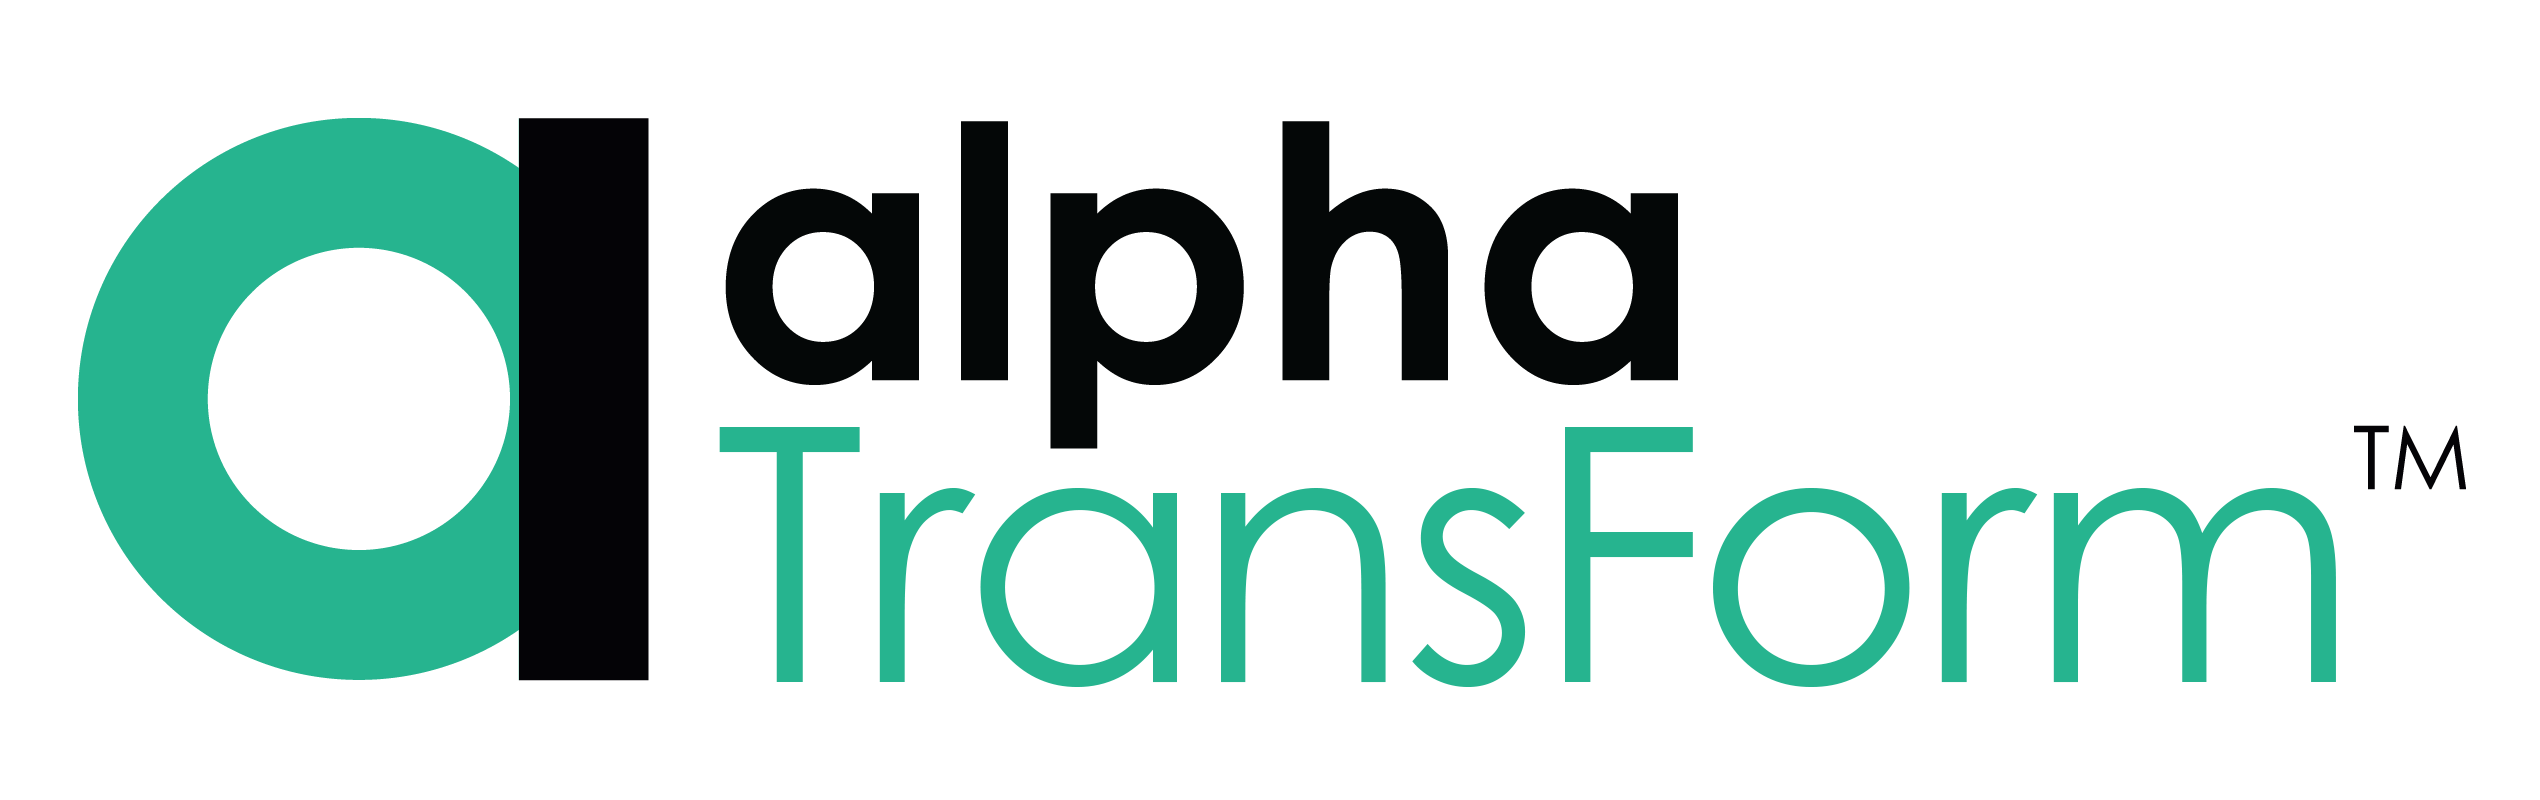 Alpha TransForm quality management software